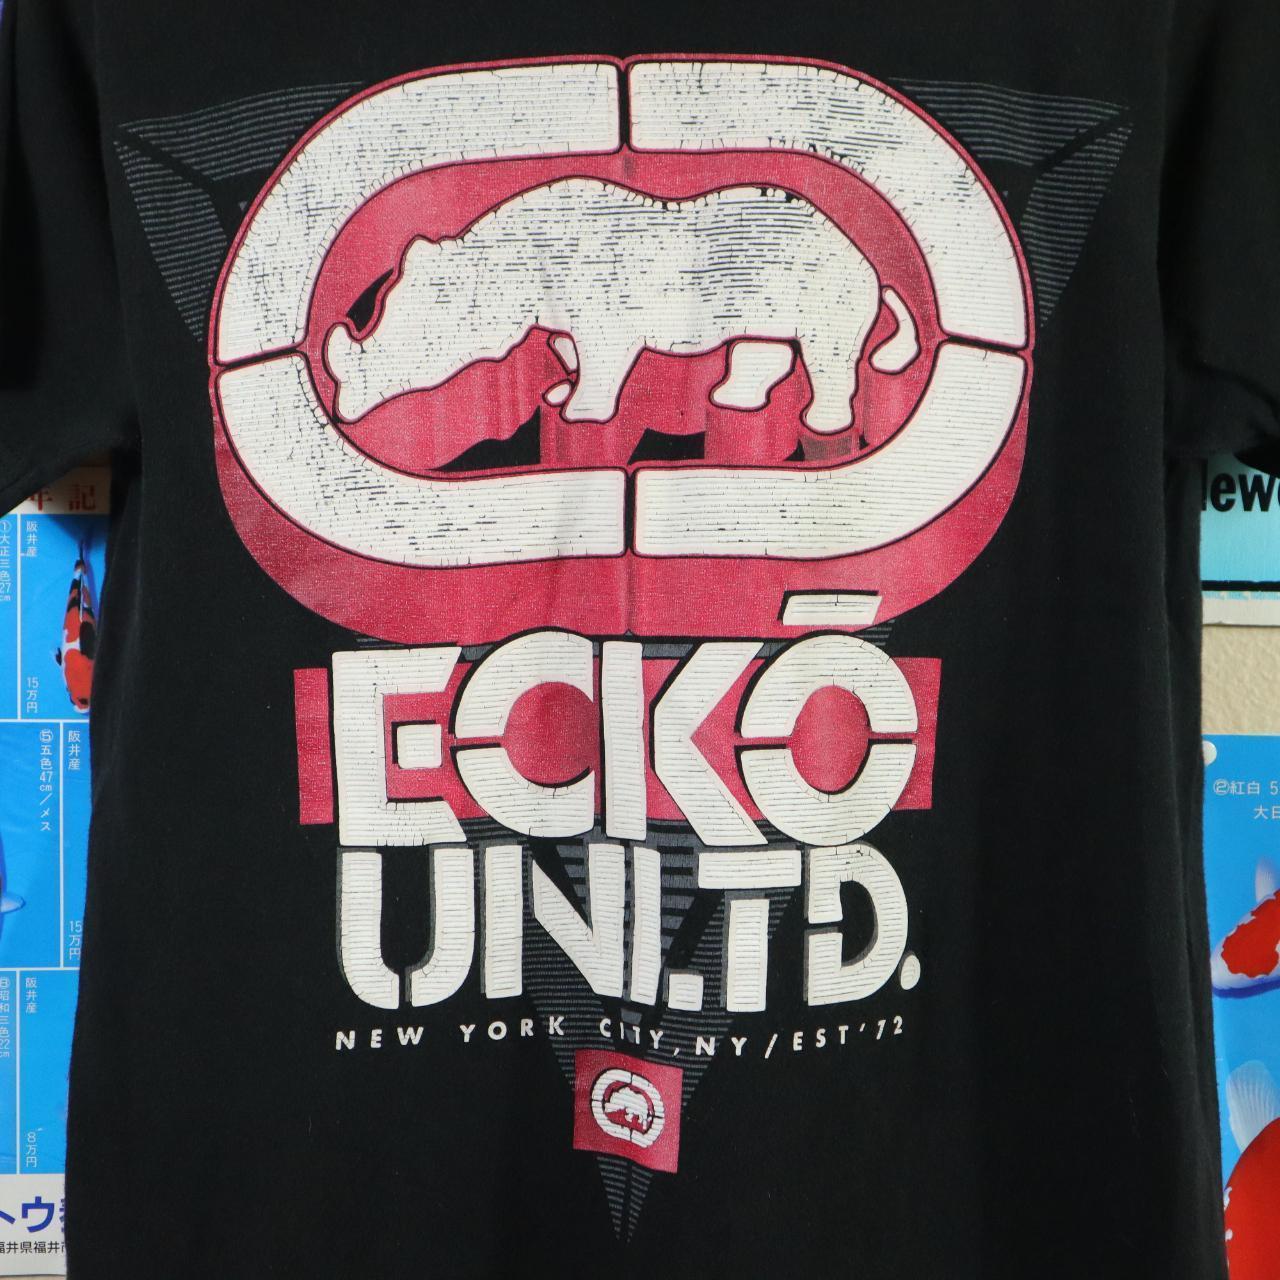 Essential Ecko Unltd. T-shirt Size Fits... -